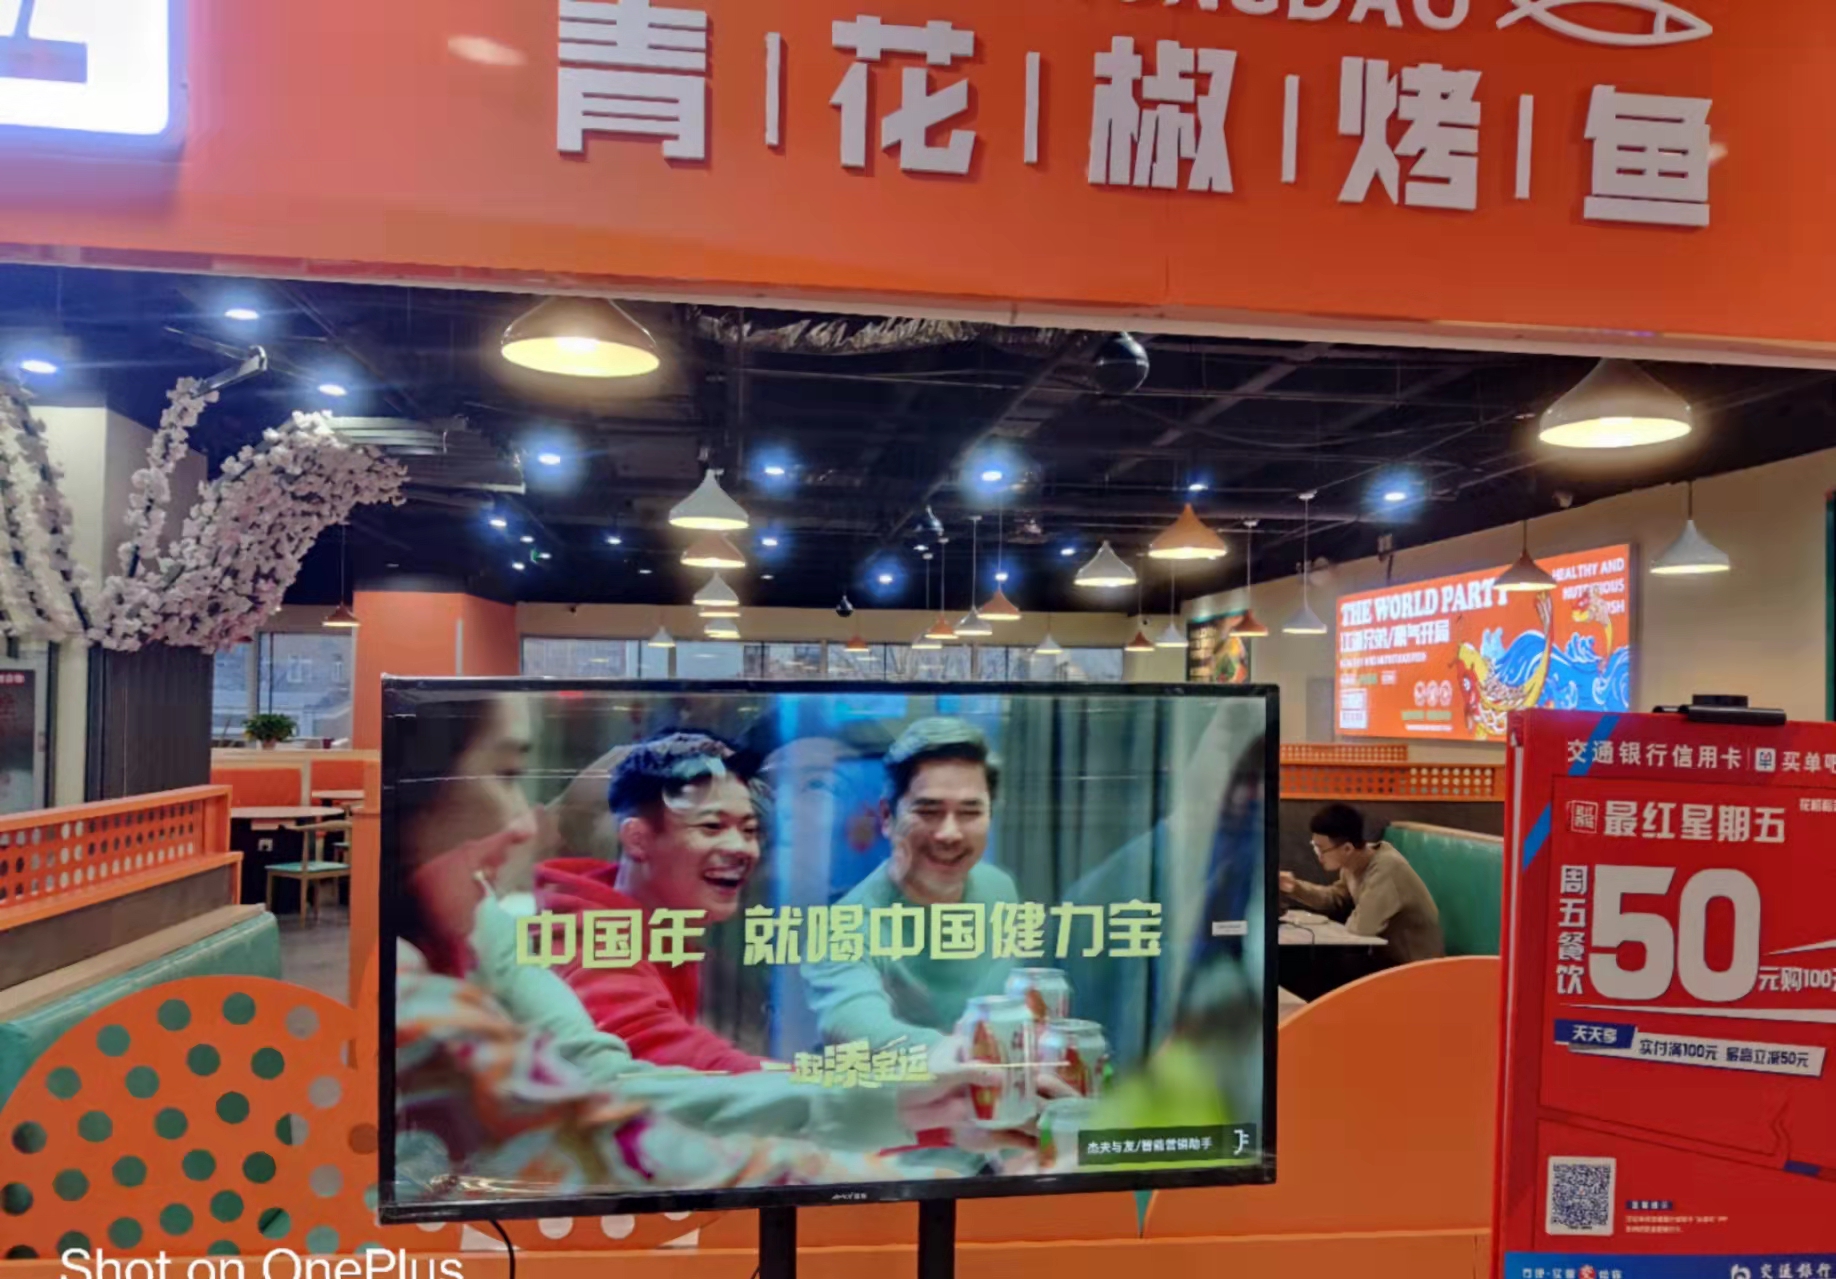 天津和平区滨江道友谊新天地广场商超卖场广告机/电视机